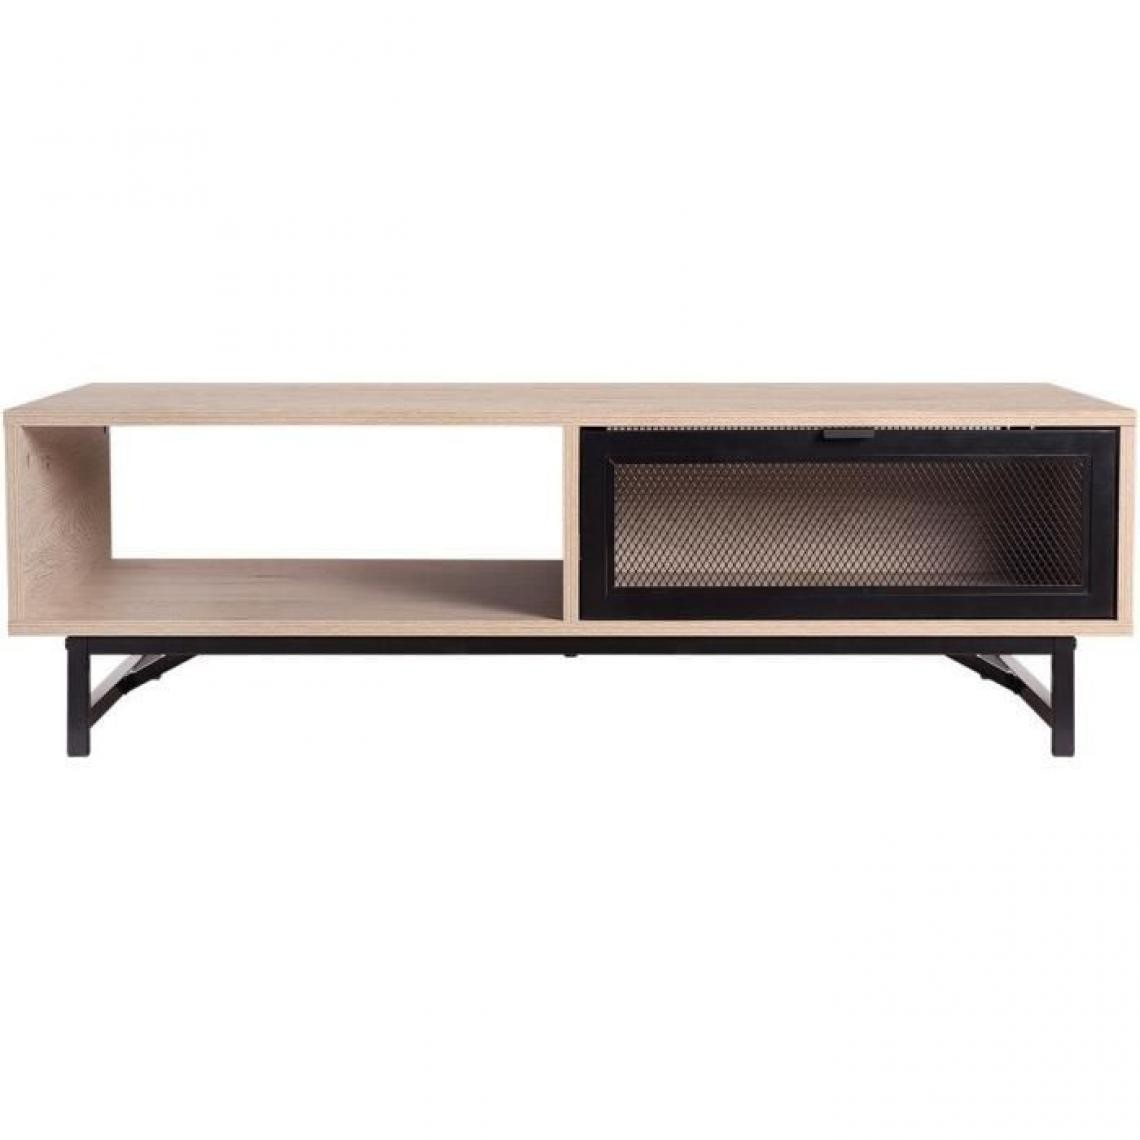 Cstore - Table basse avec 2 tiroirs - Noir et chêne - 110 x 60 x 34 cm - VENTURY - Tables basses